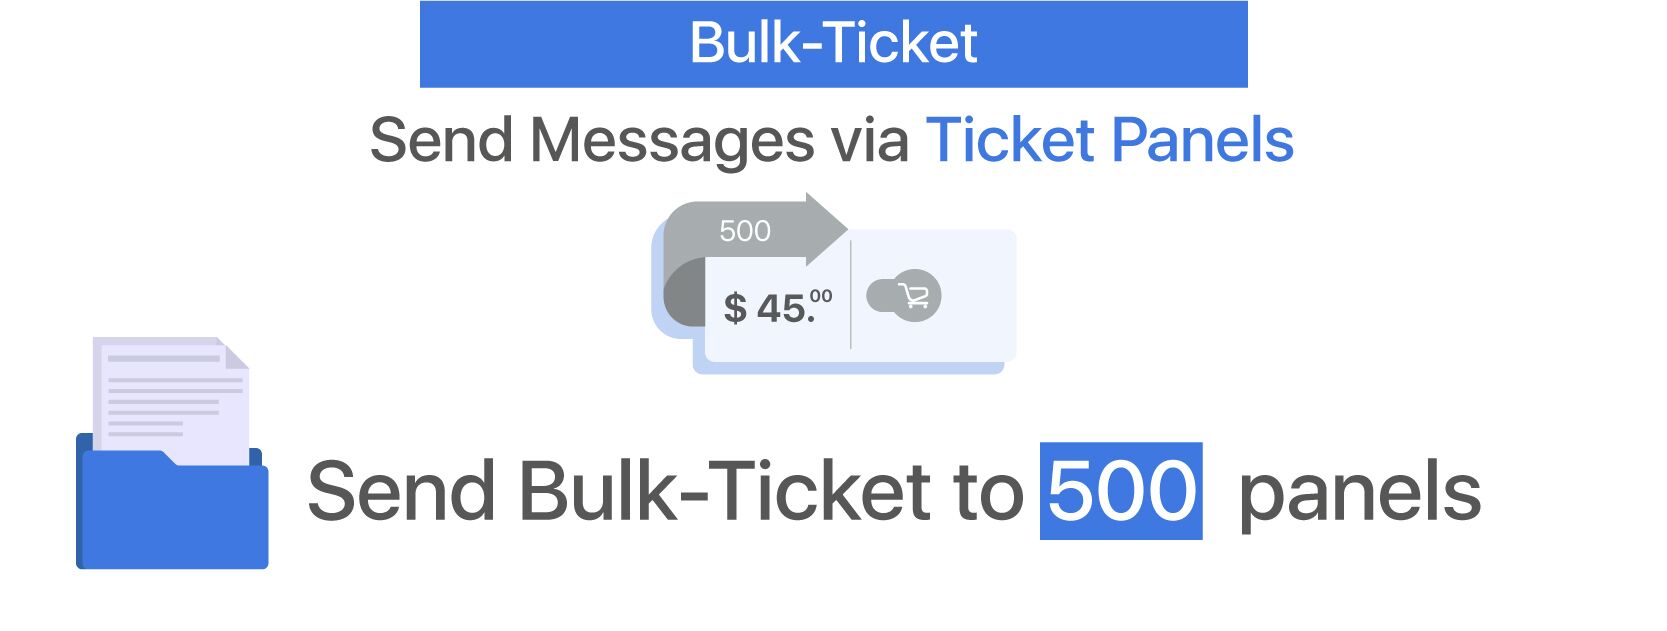 Bulk-Ticket - 500 Panels